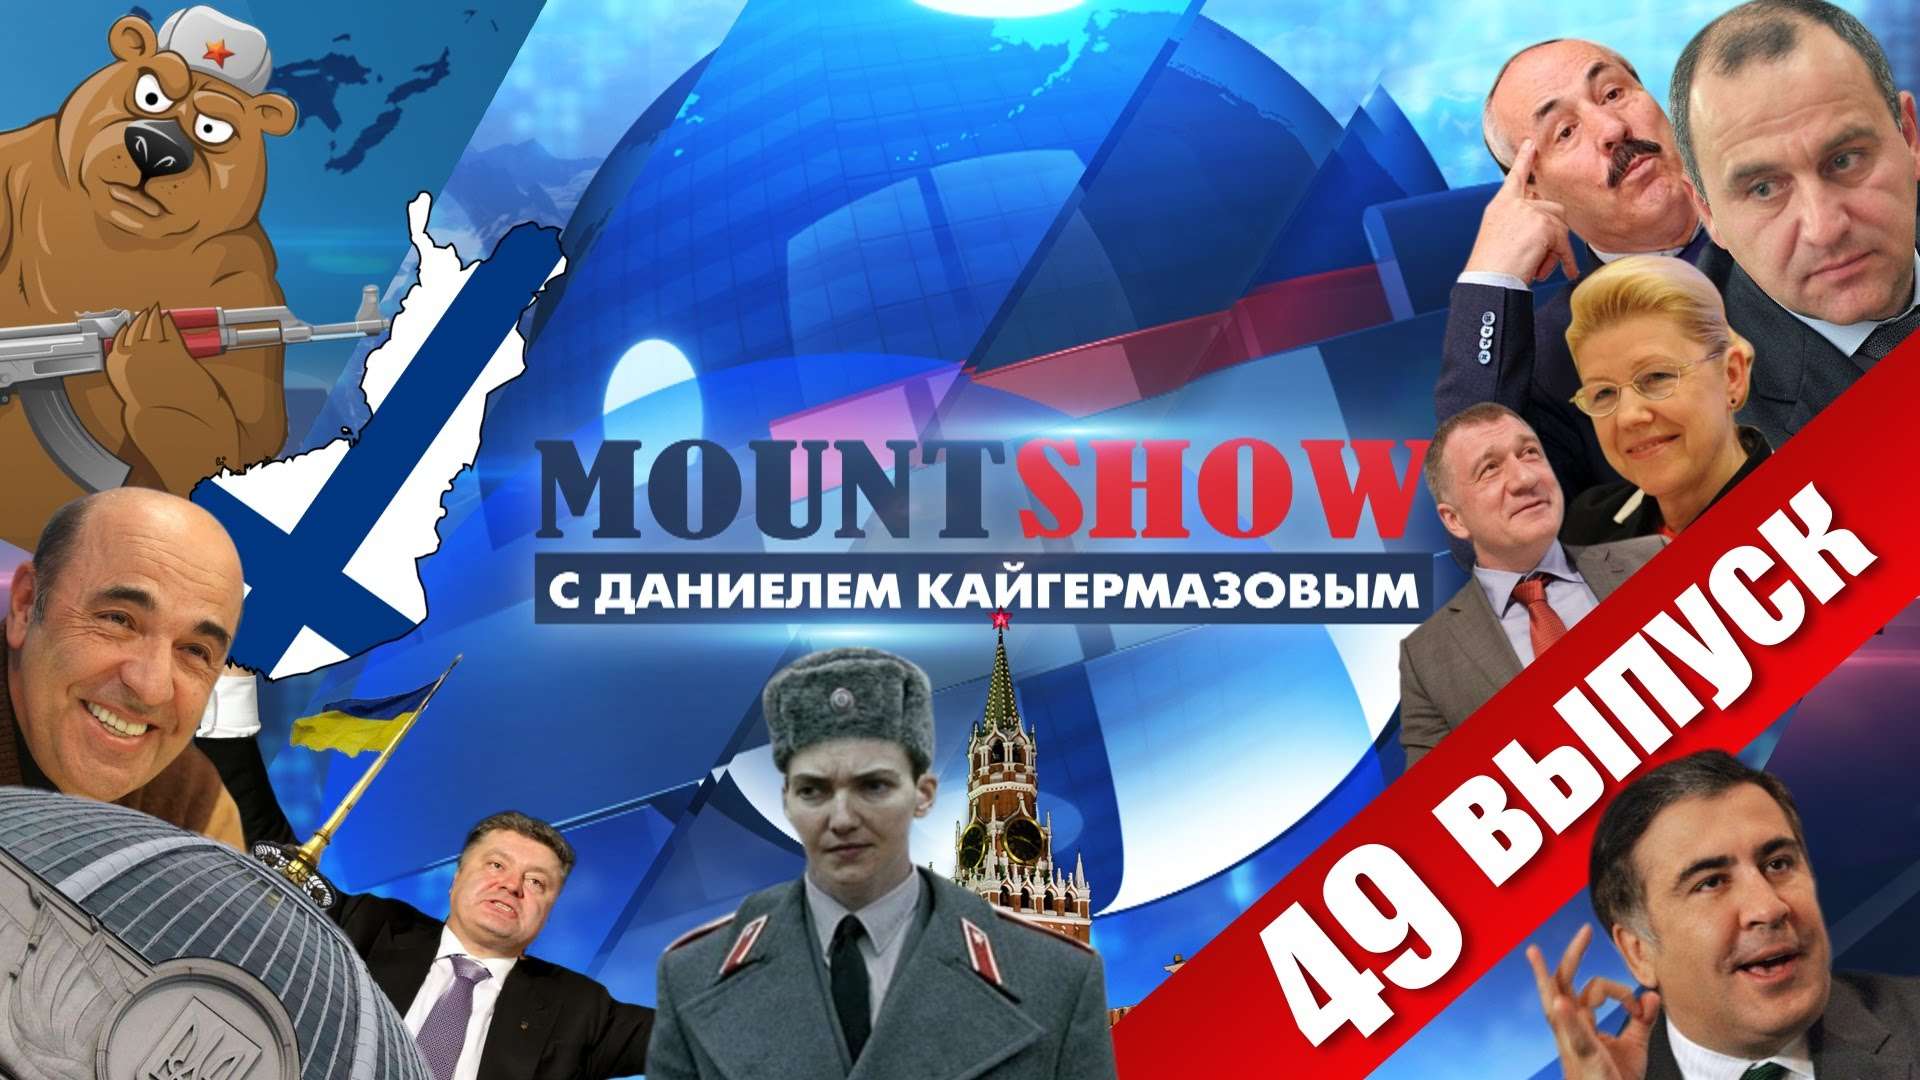 MOUNT SHOW (вып. 49) – Савченко – агент Кремля